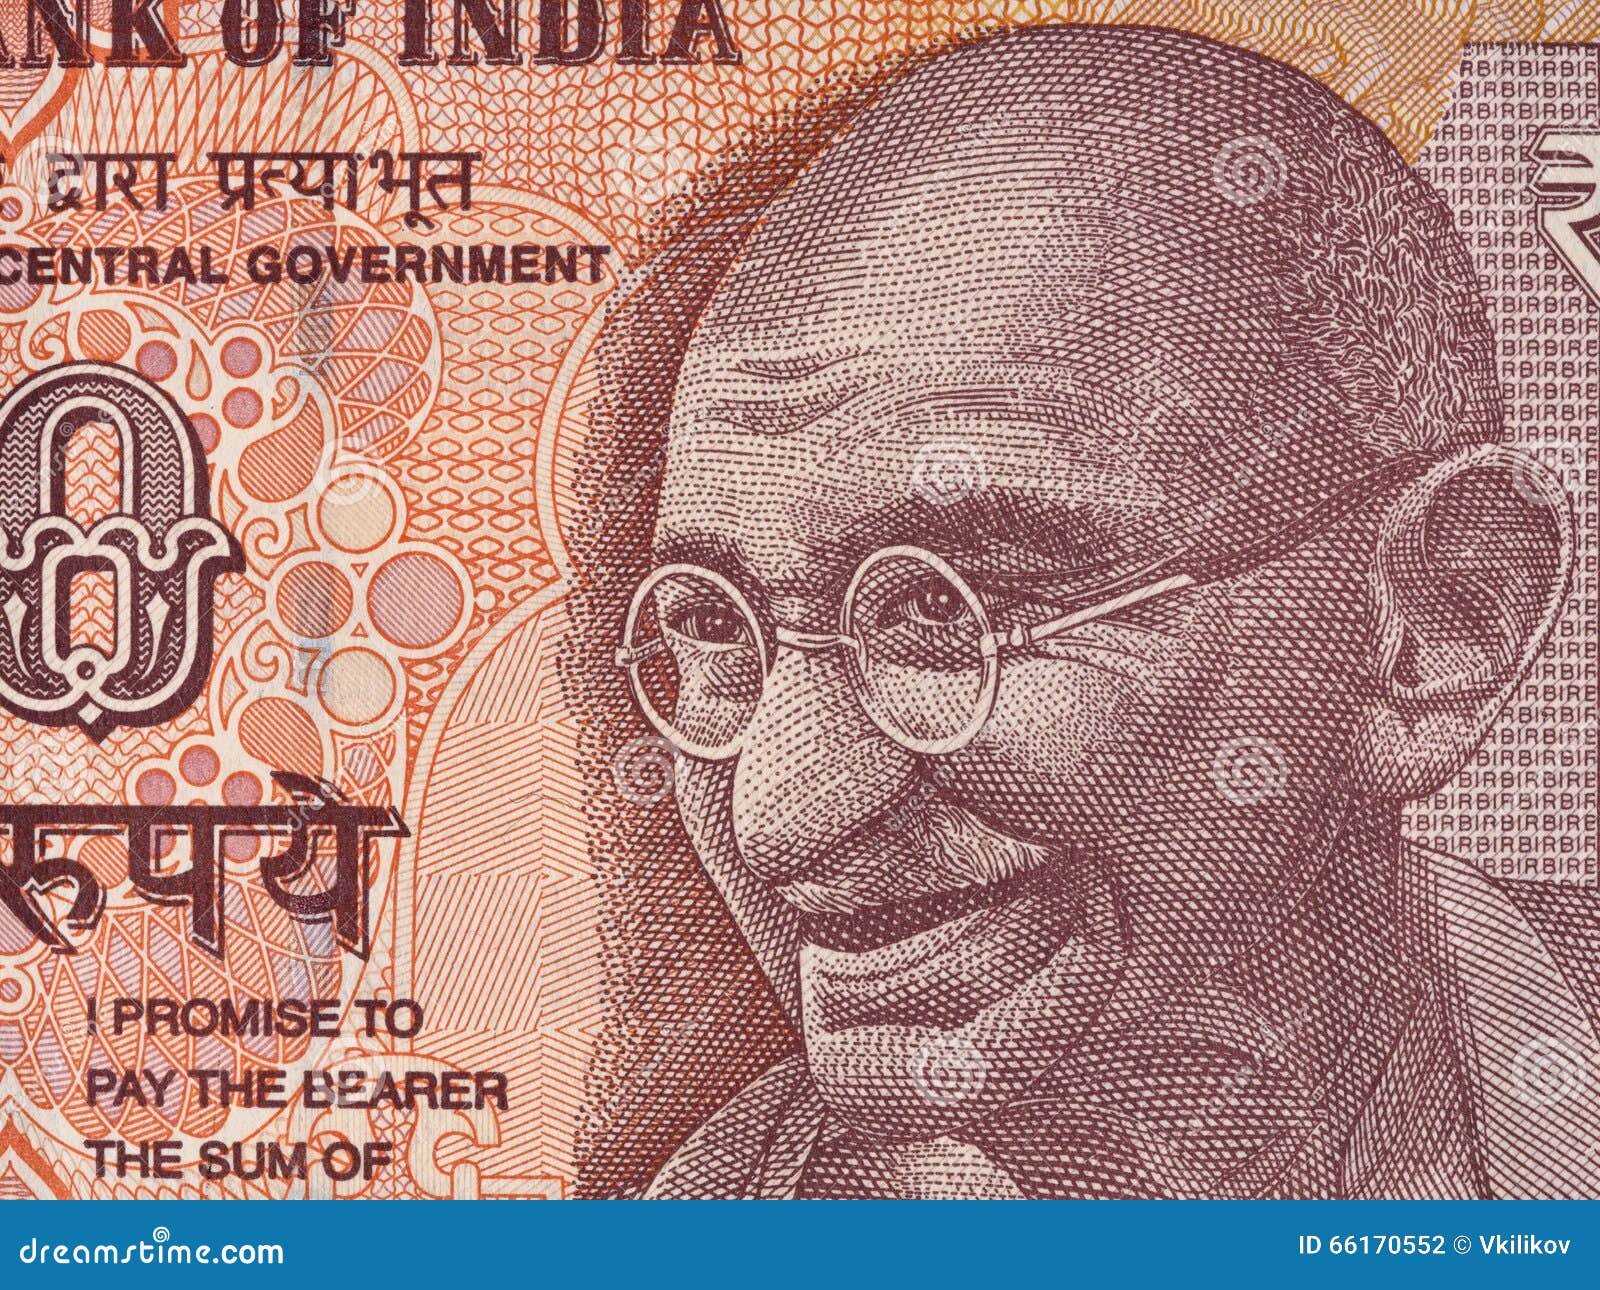 Retrato de Mahatma Gandhi no indiano macro da cédula de 10 rupias, Indi. Retrato de Mahatma Gandhi no indiano macro da cédula de 10 rupias, close up do dinheiro da Índia